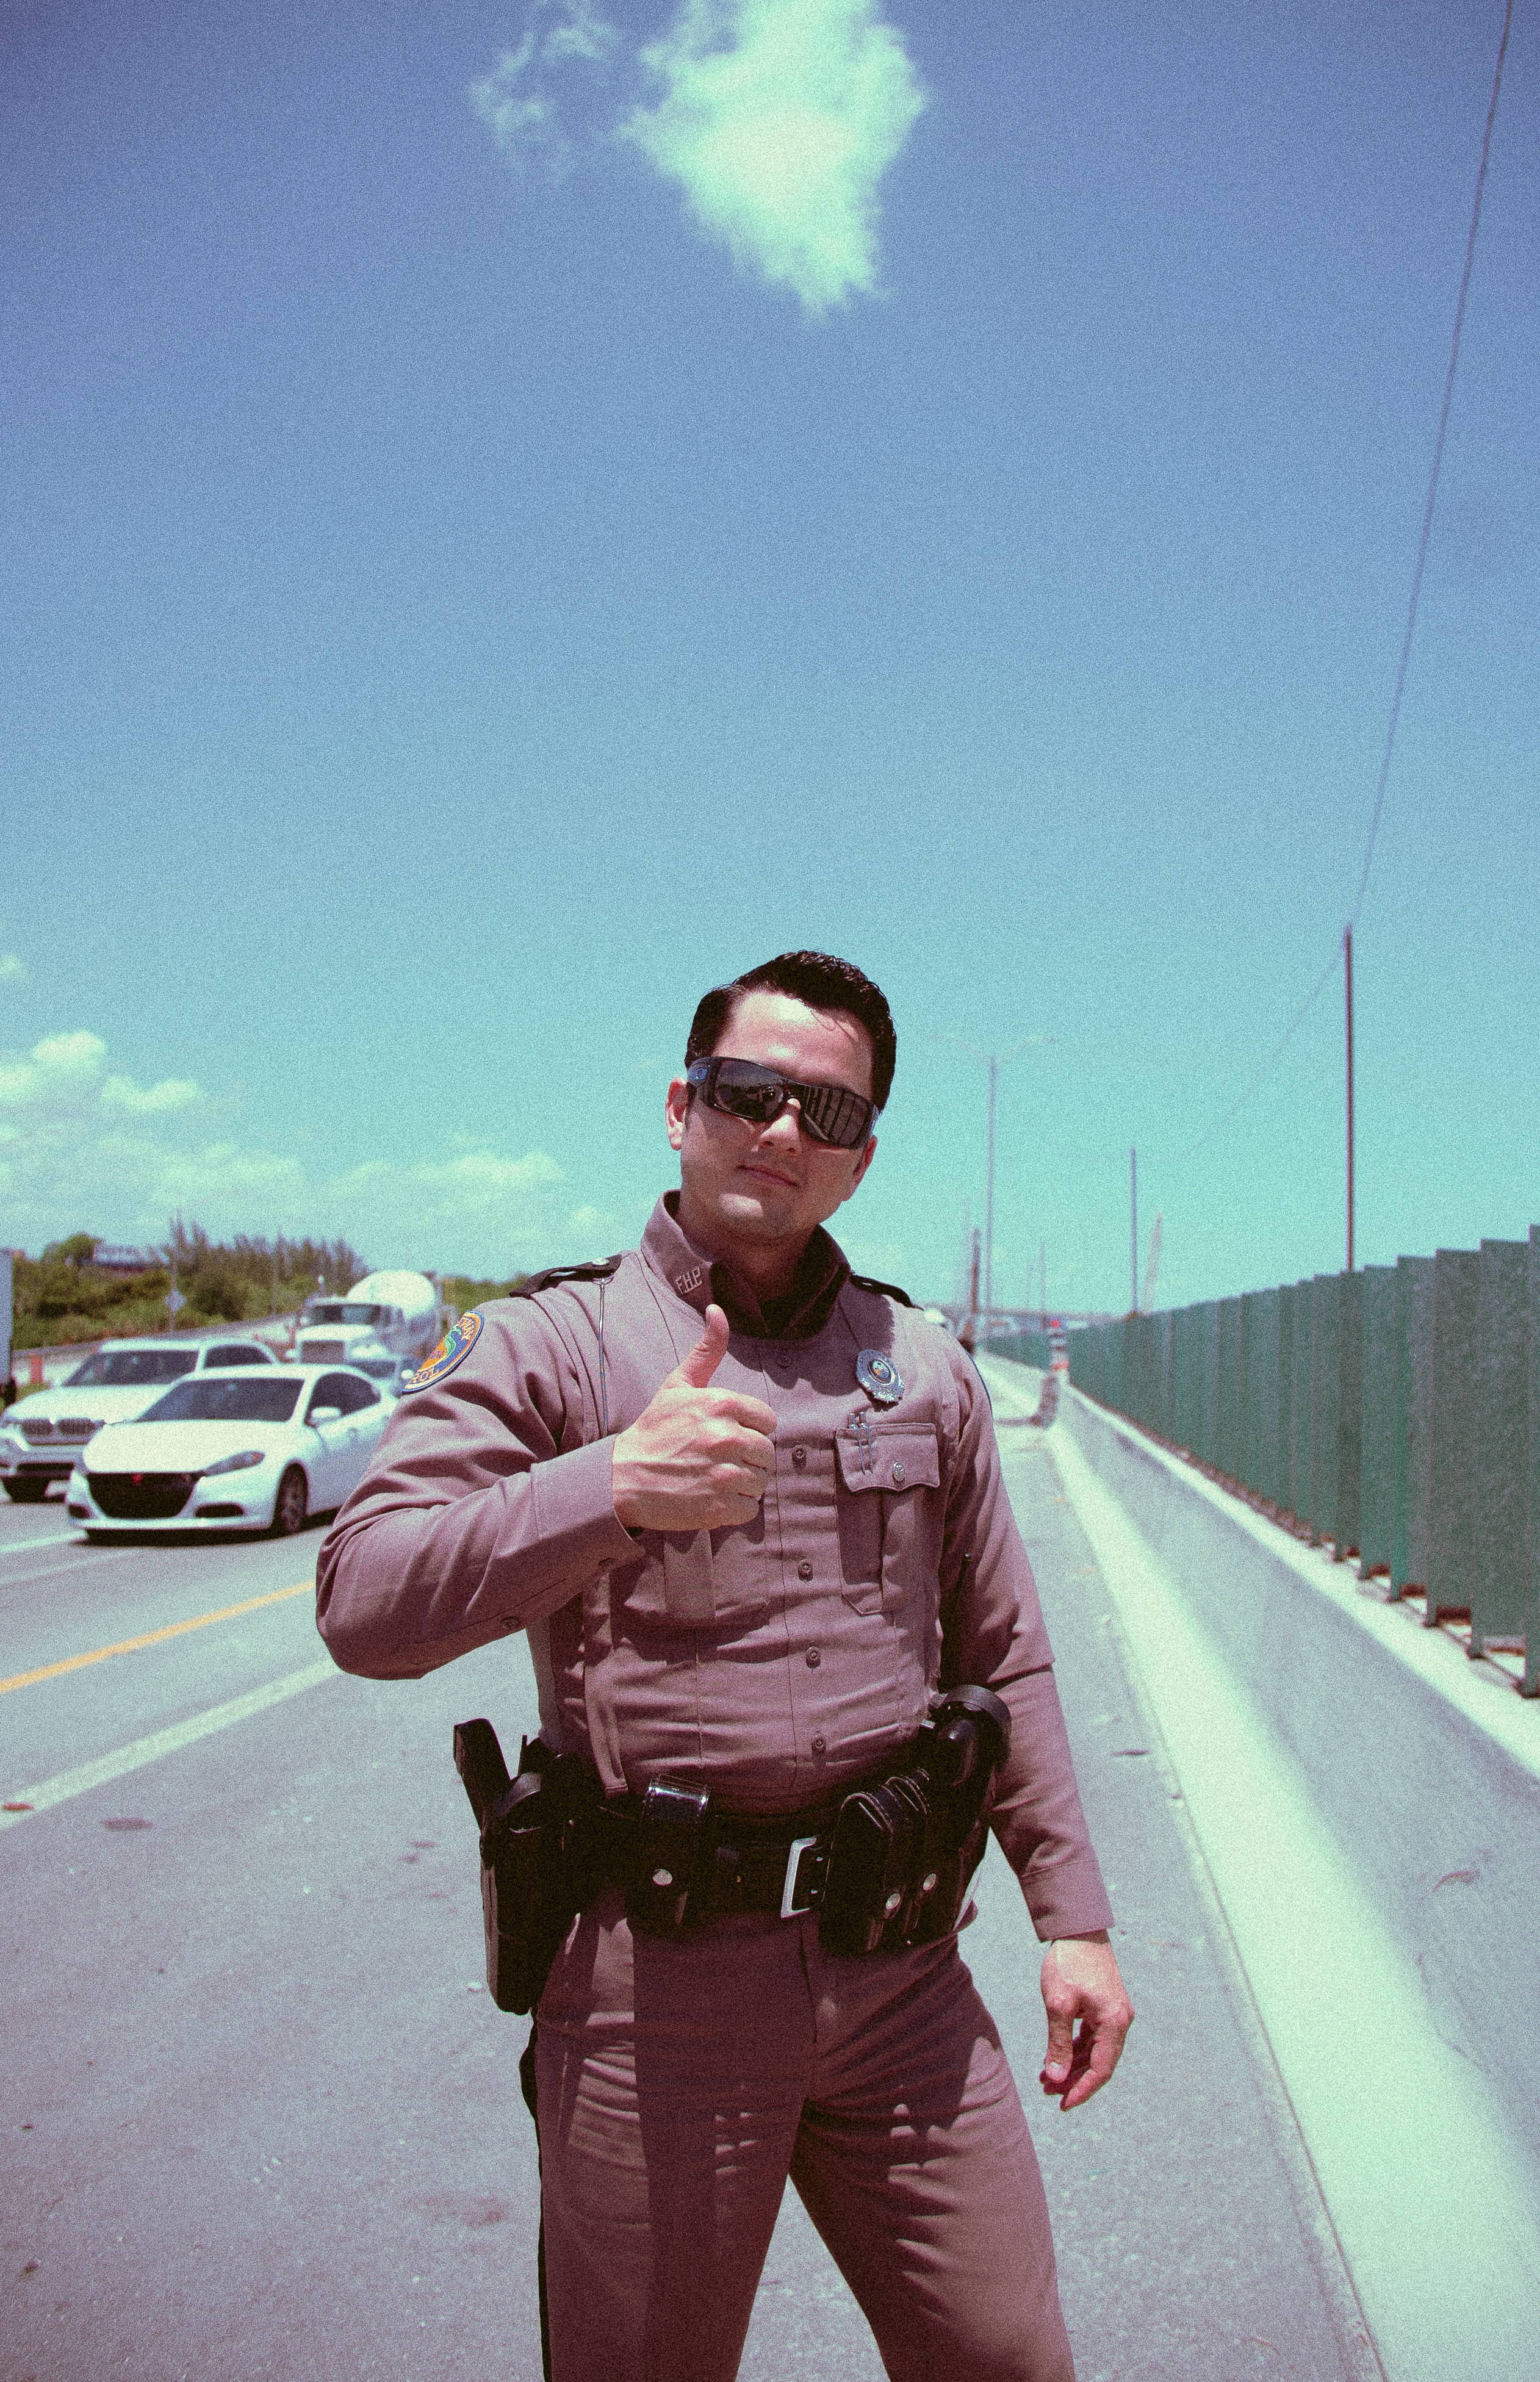 A friendly cop.